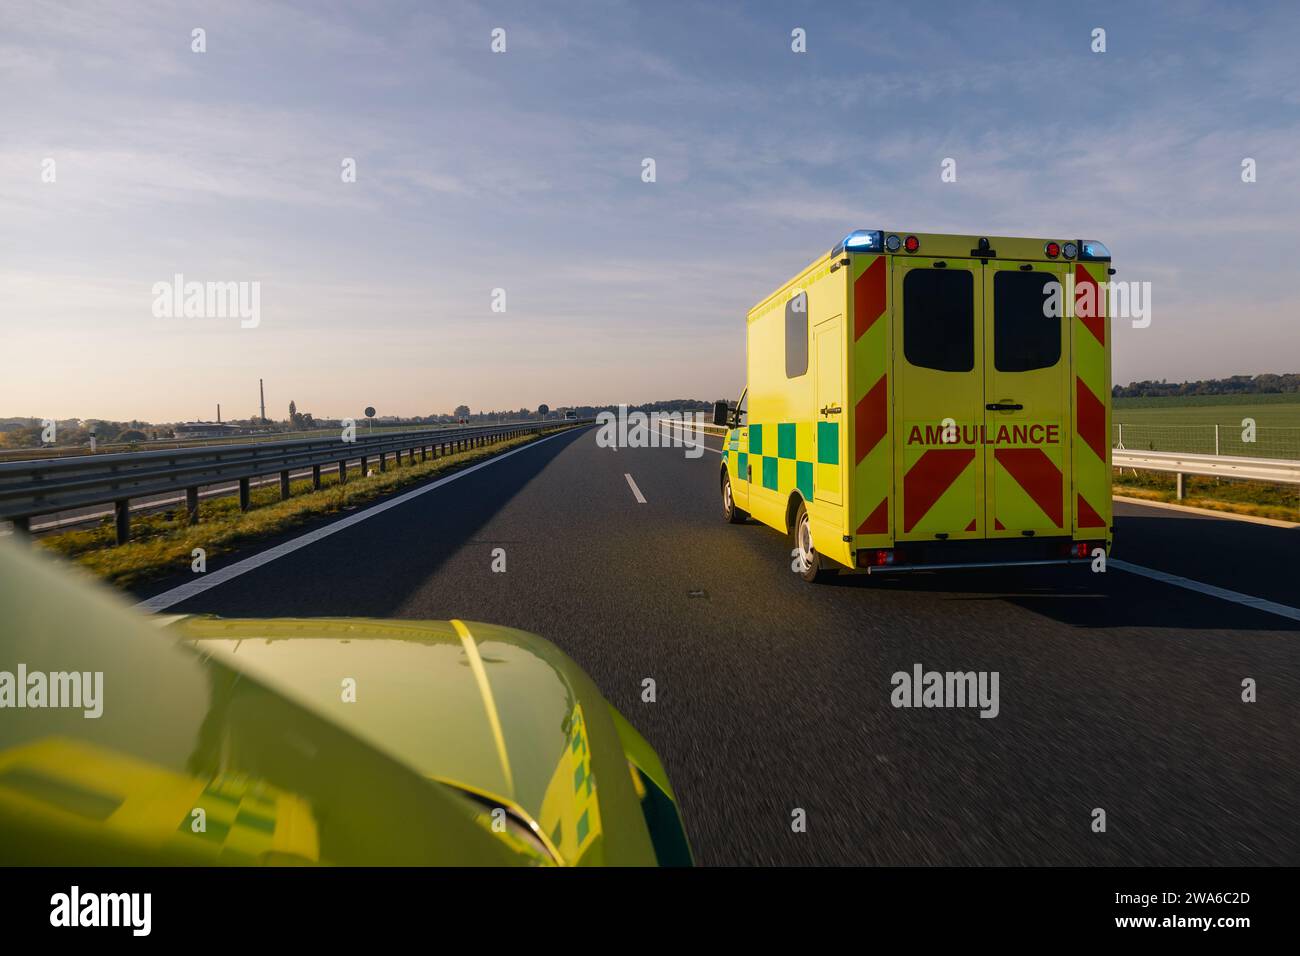 Zwei schnell fahrende Ambulanzwagen des Rettungsdienstes auf der Autobahn. Themen Gesundheit, Rettung und Dringlichkeit. Stockfoto